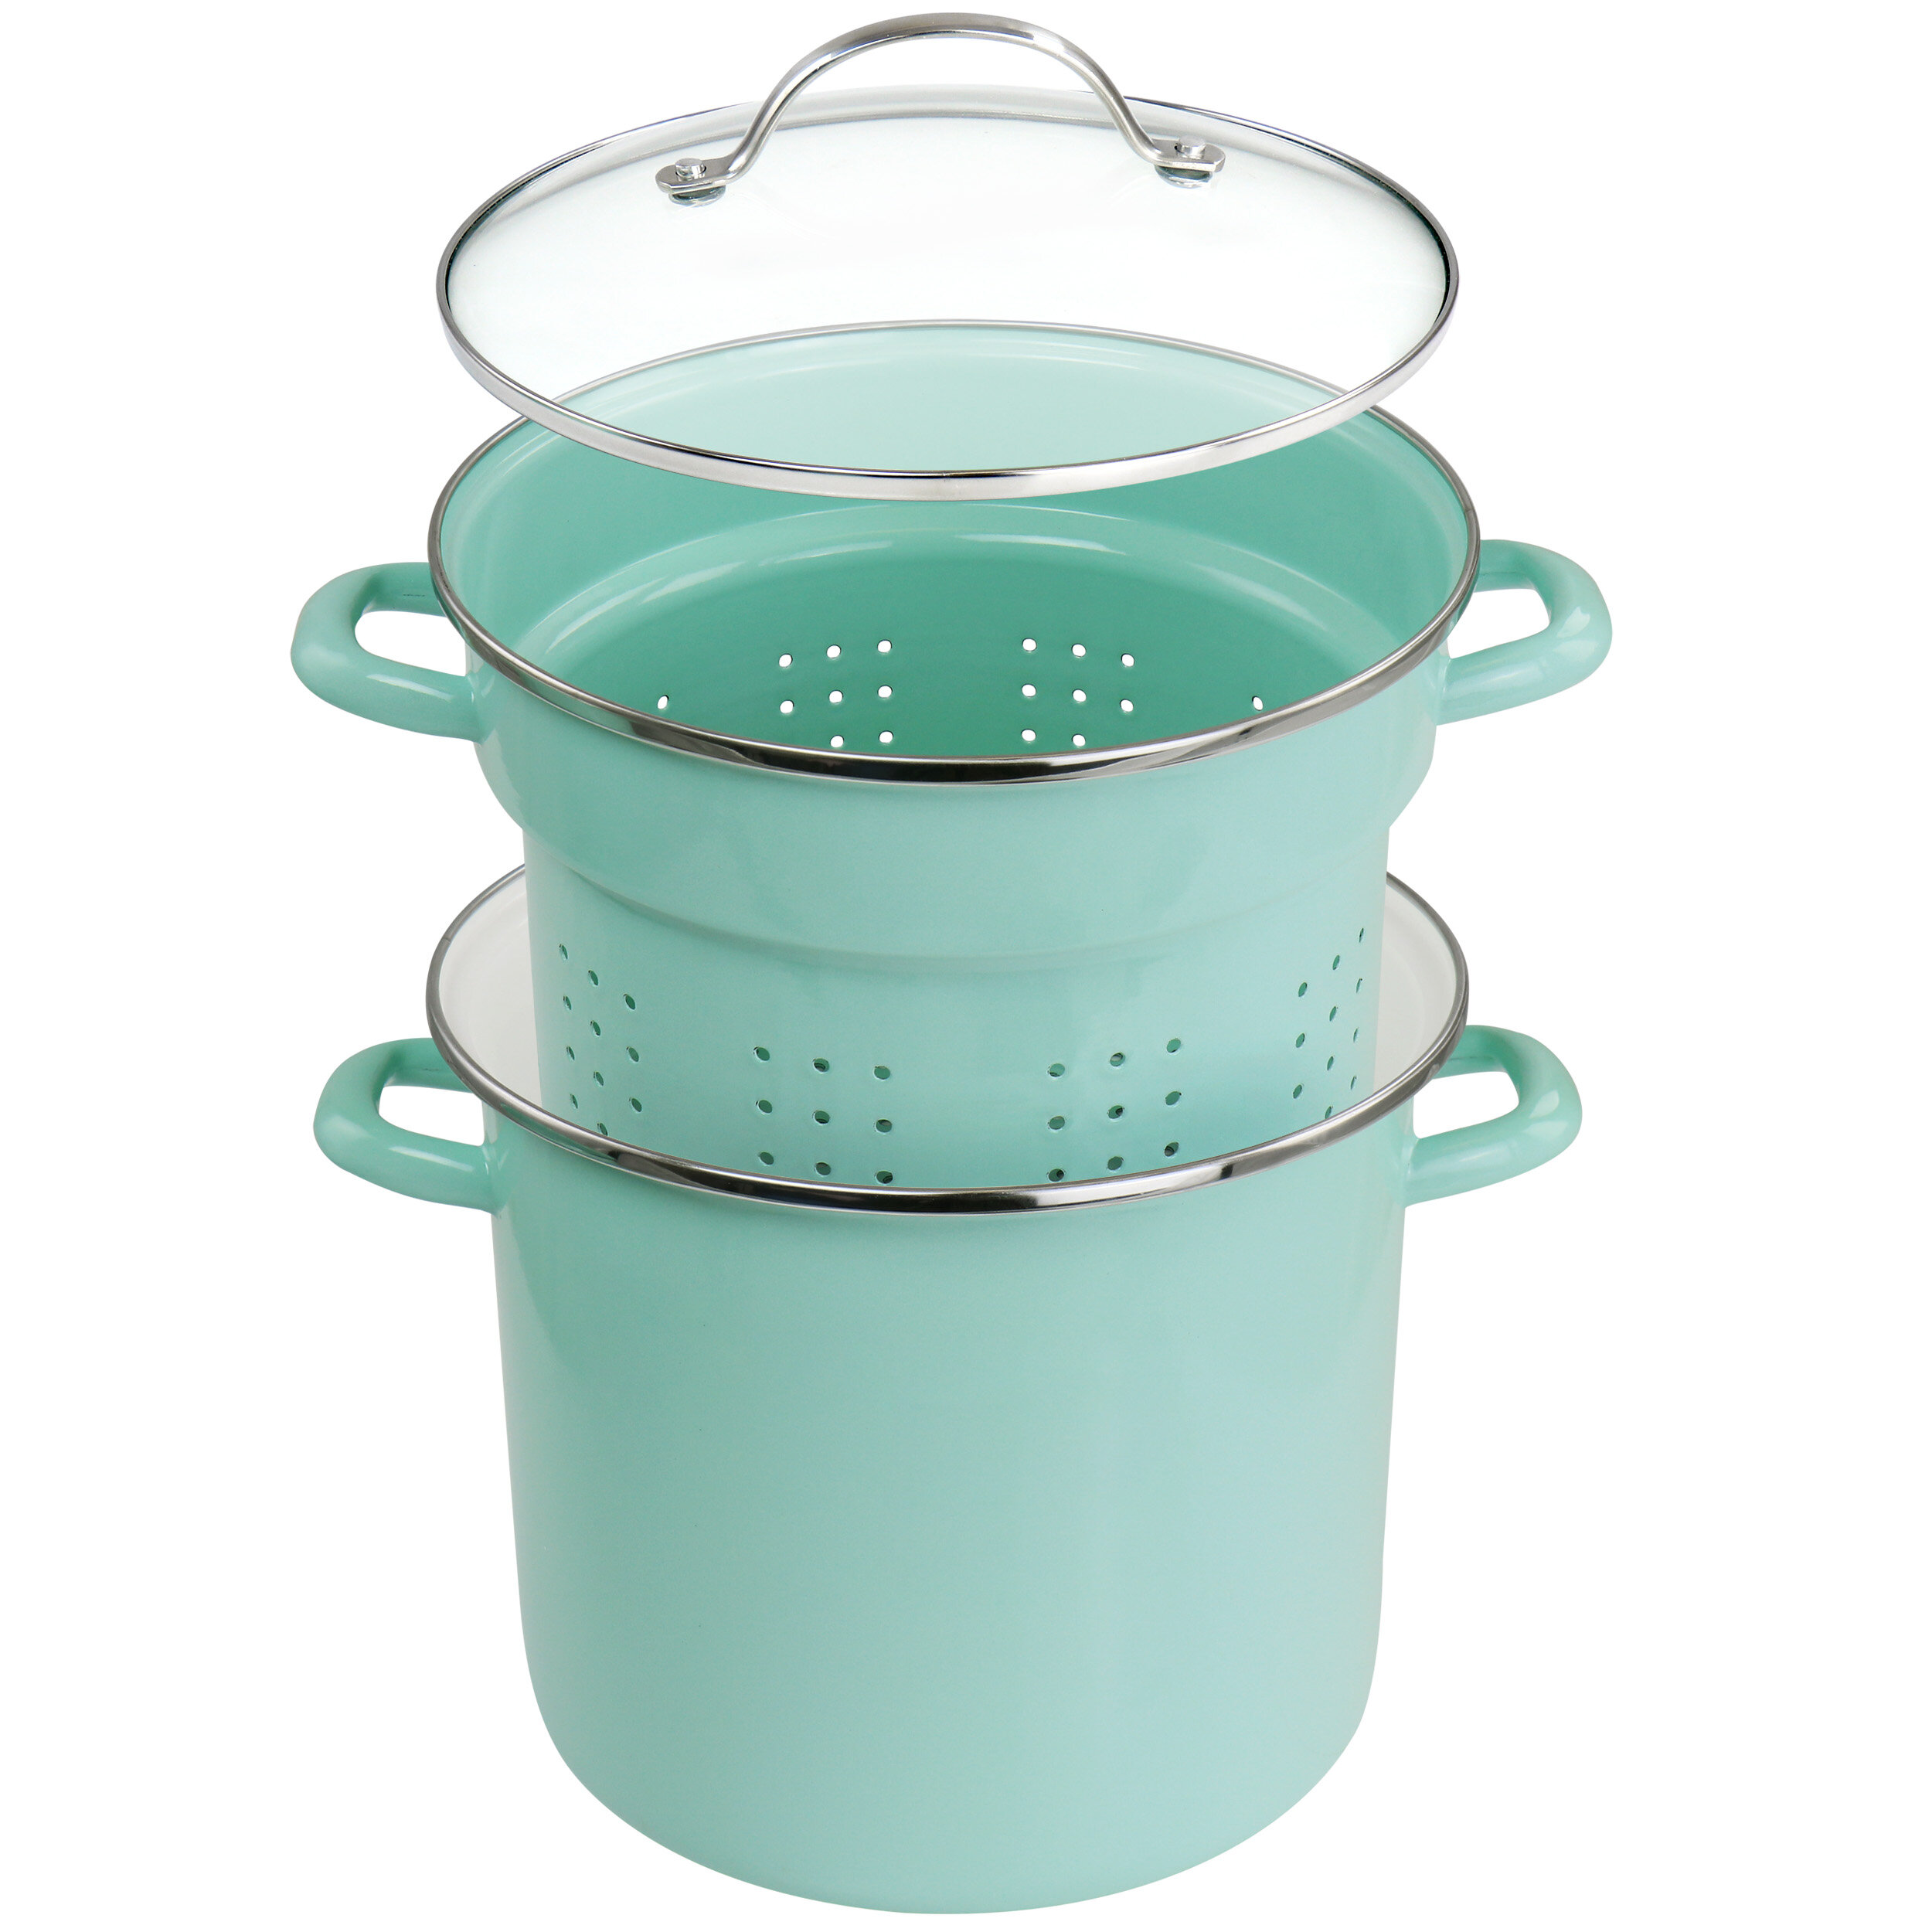 Martha Stewart 16 Quart Turquoise Steel Steamer Pot